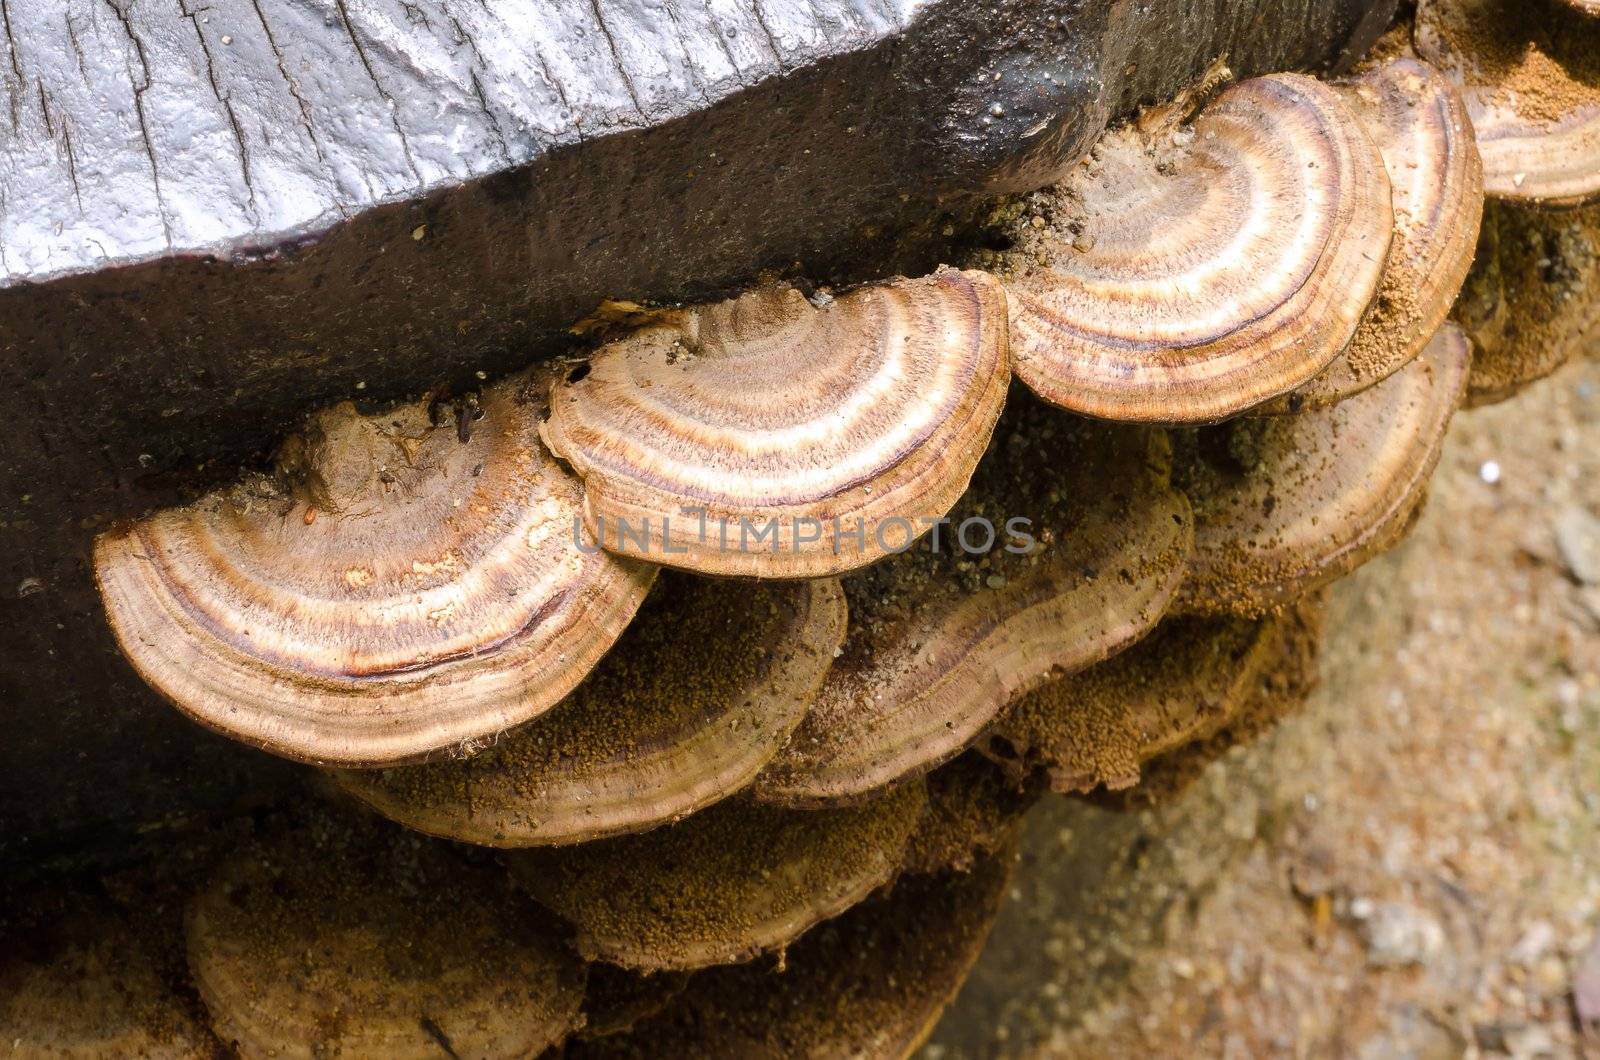 mushroom grow on dead wood